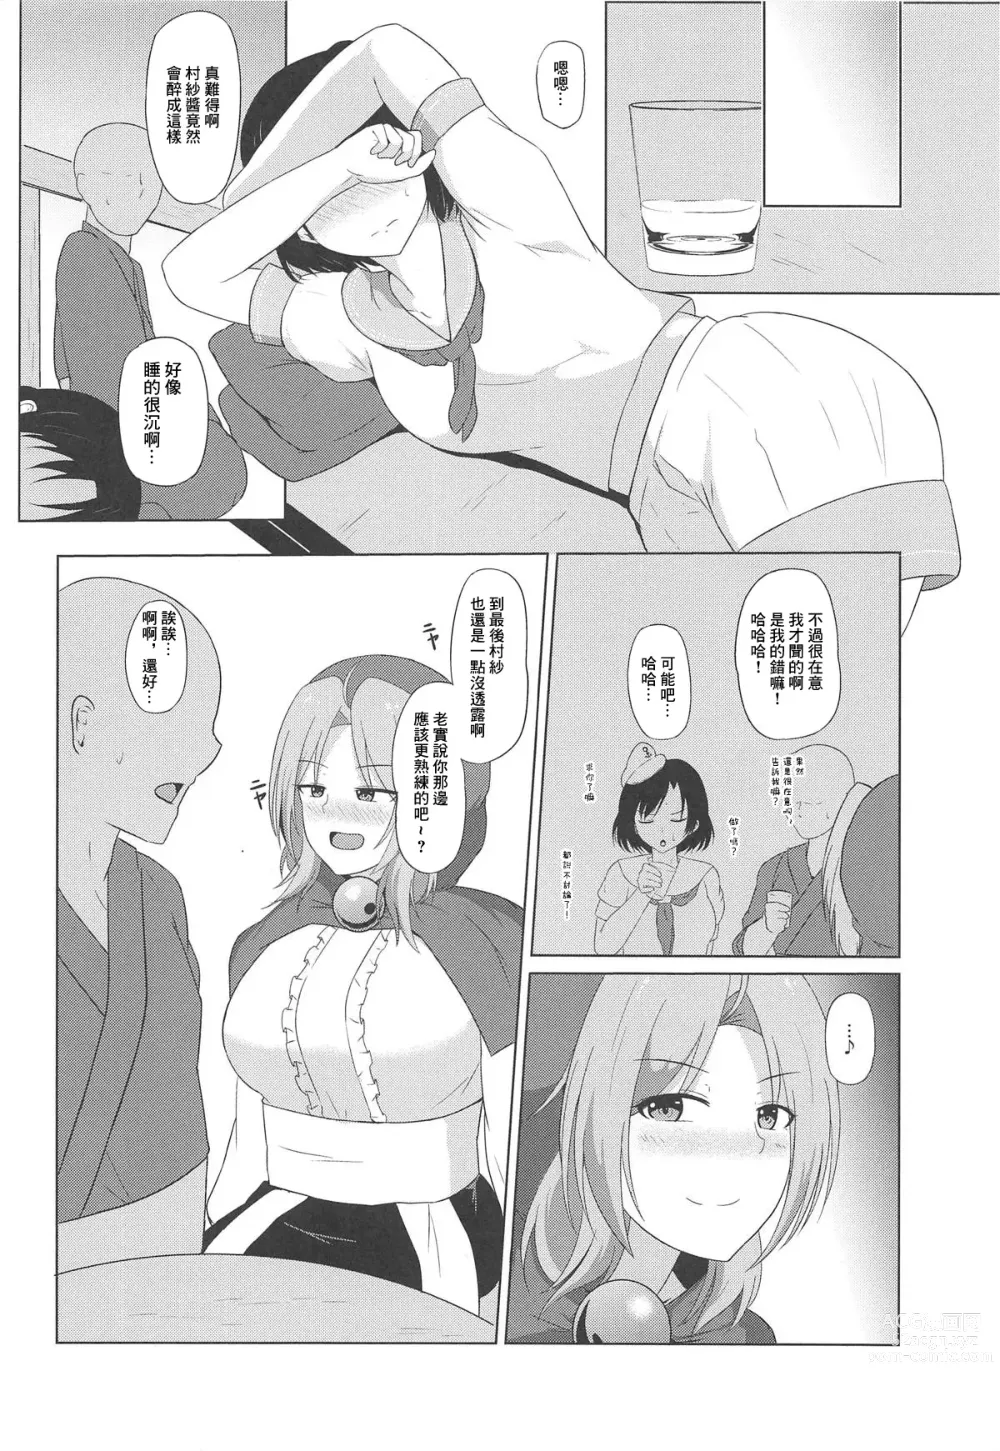 Page 5 of doujinshi 雲間的秘密